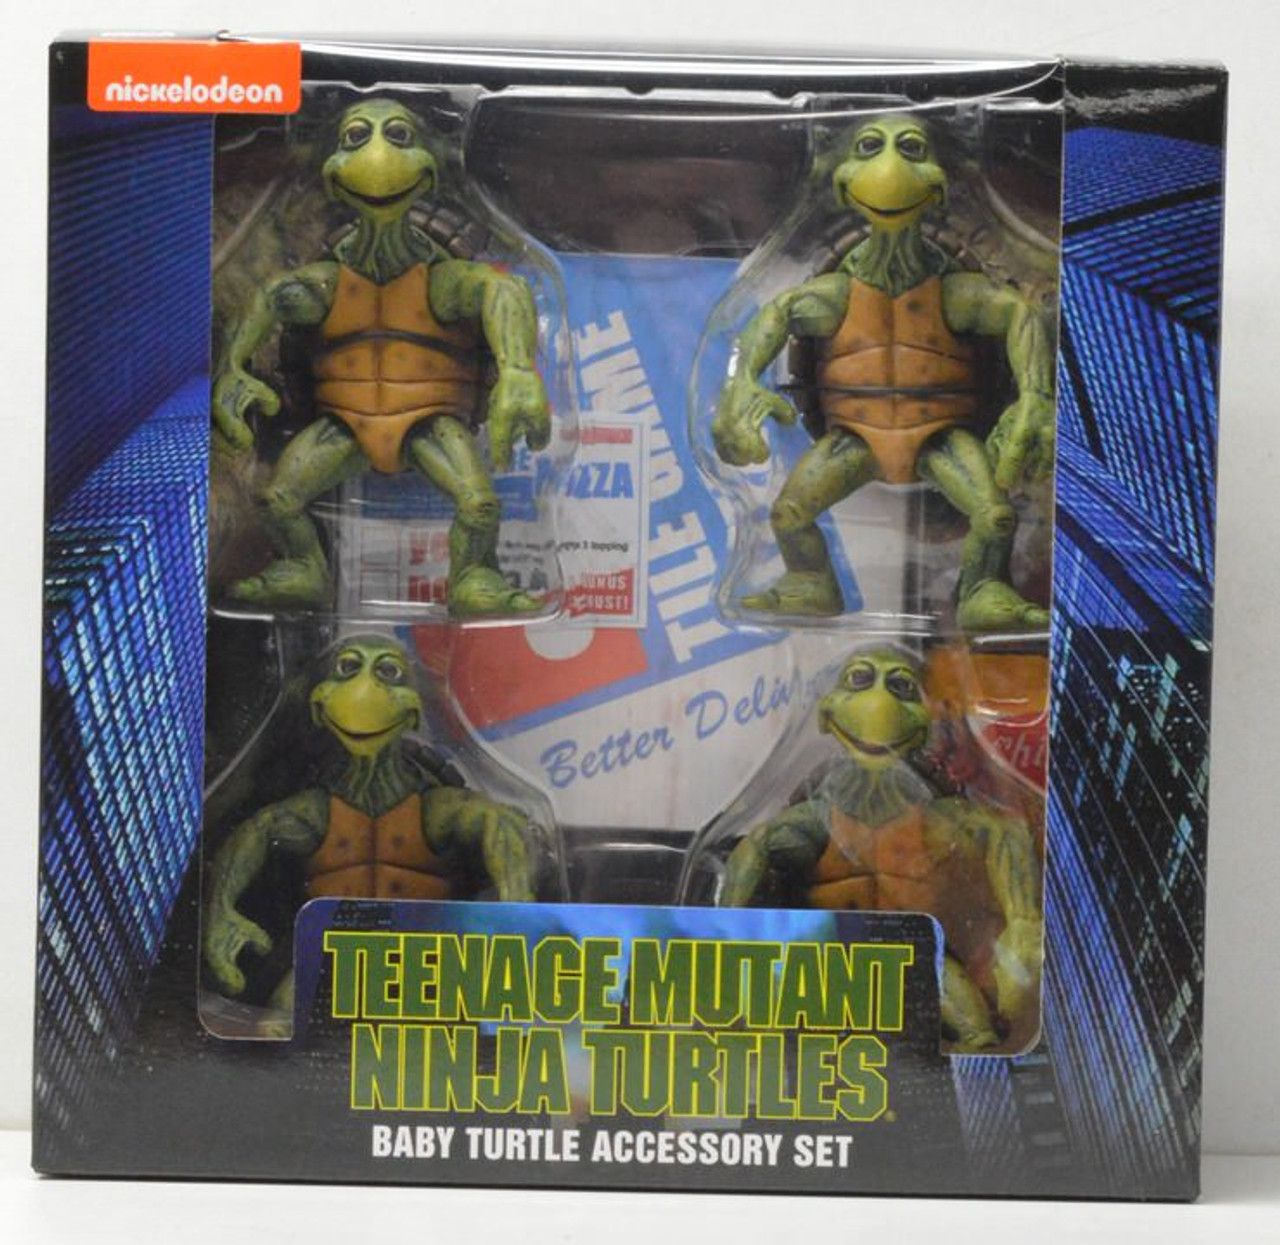 Teenage Mutant Ninja Turtles (Cartoon) 7” Scale Accessory Set Pre